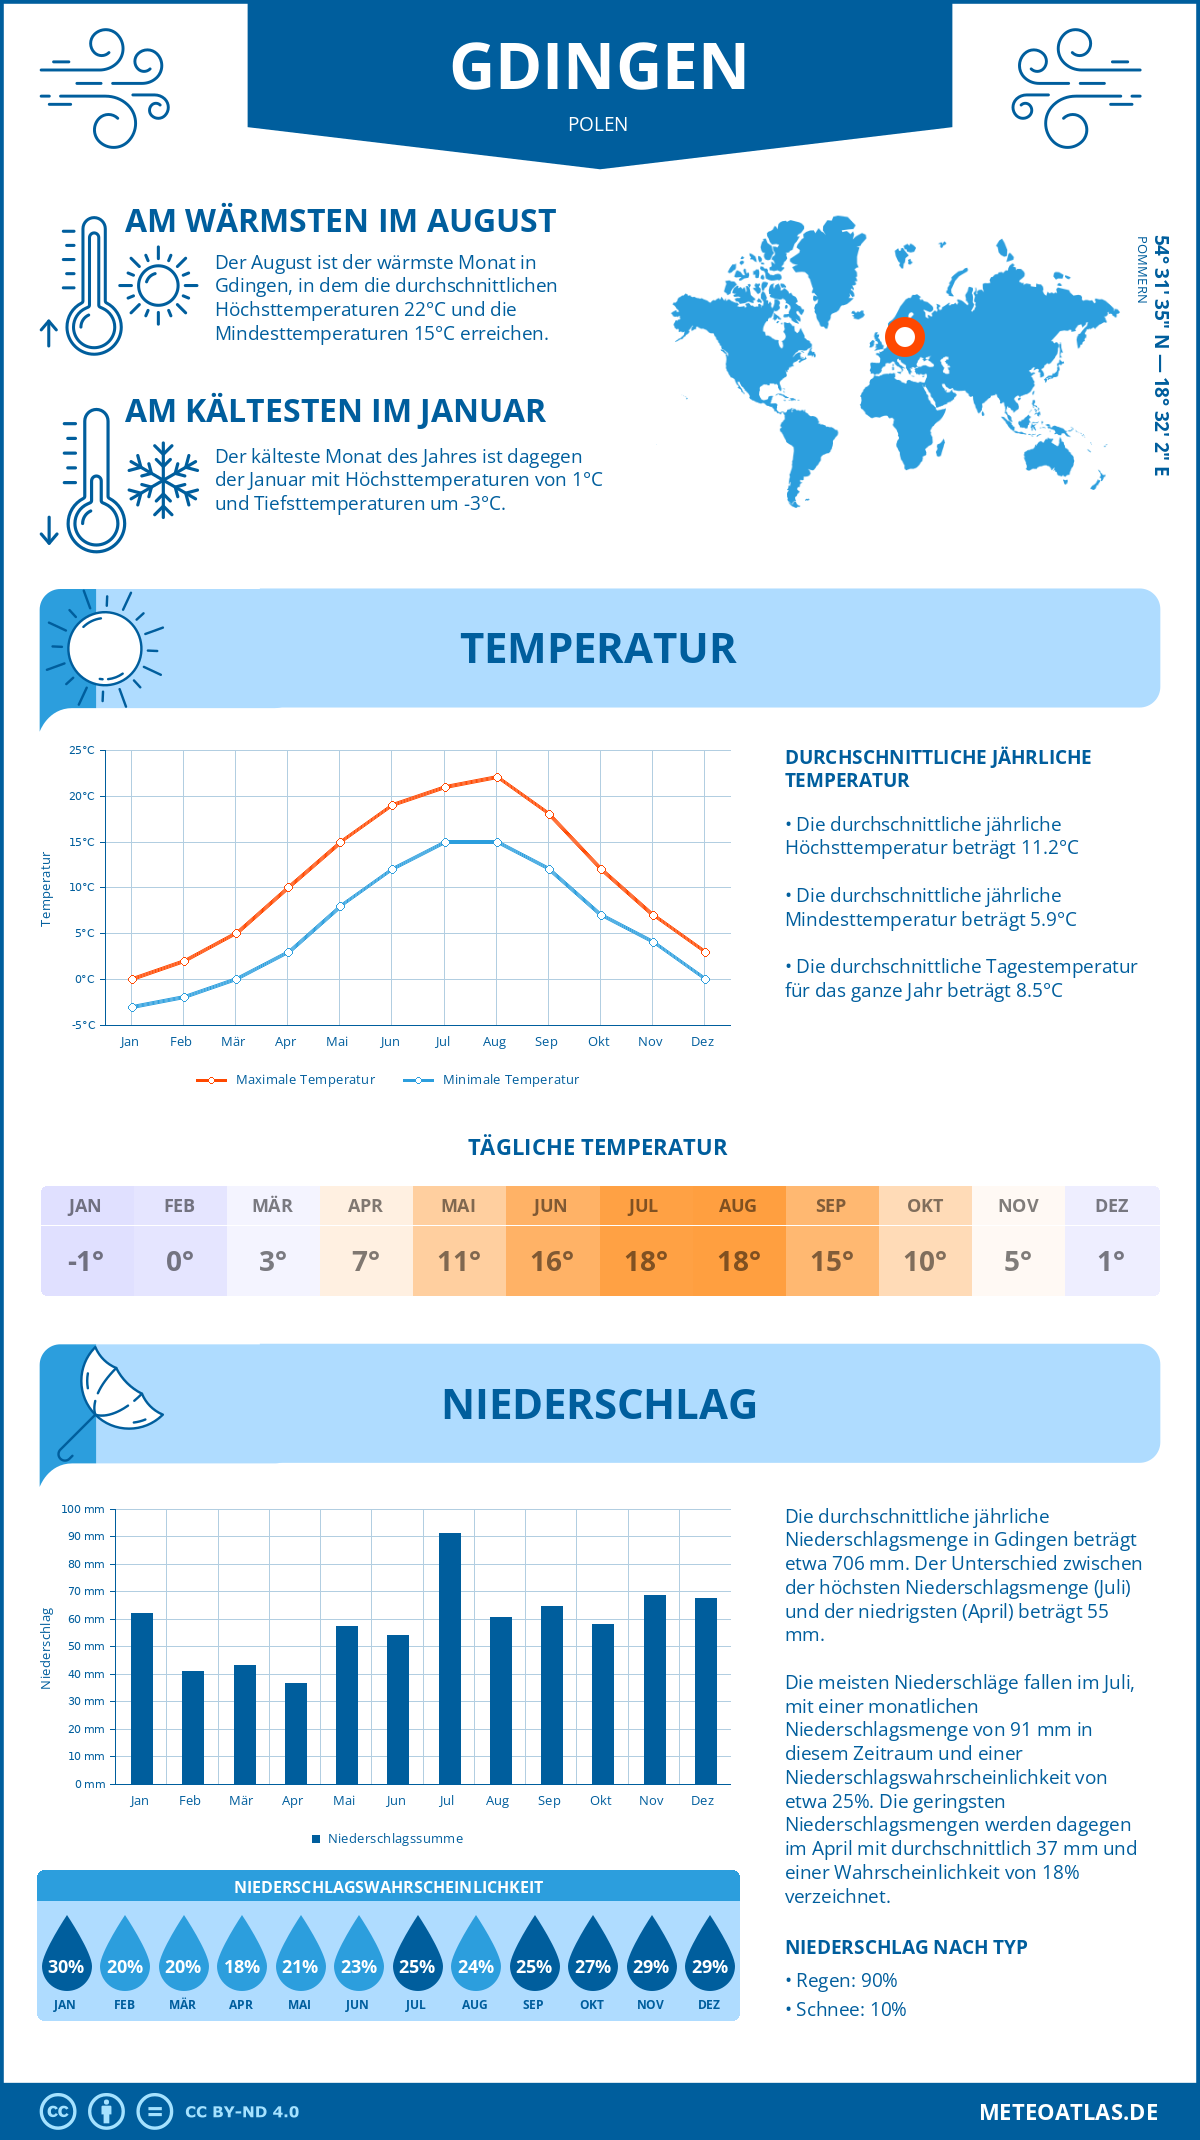 Wetter Gdingen (Polen) - Temperatur und Niederschlag